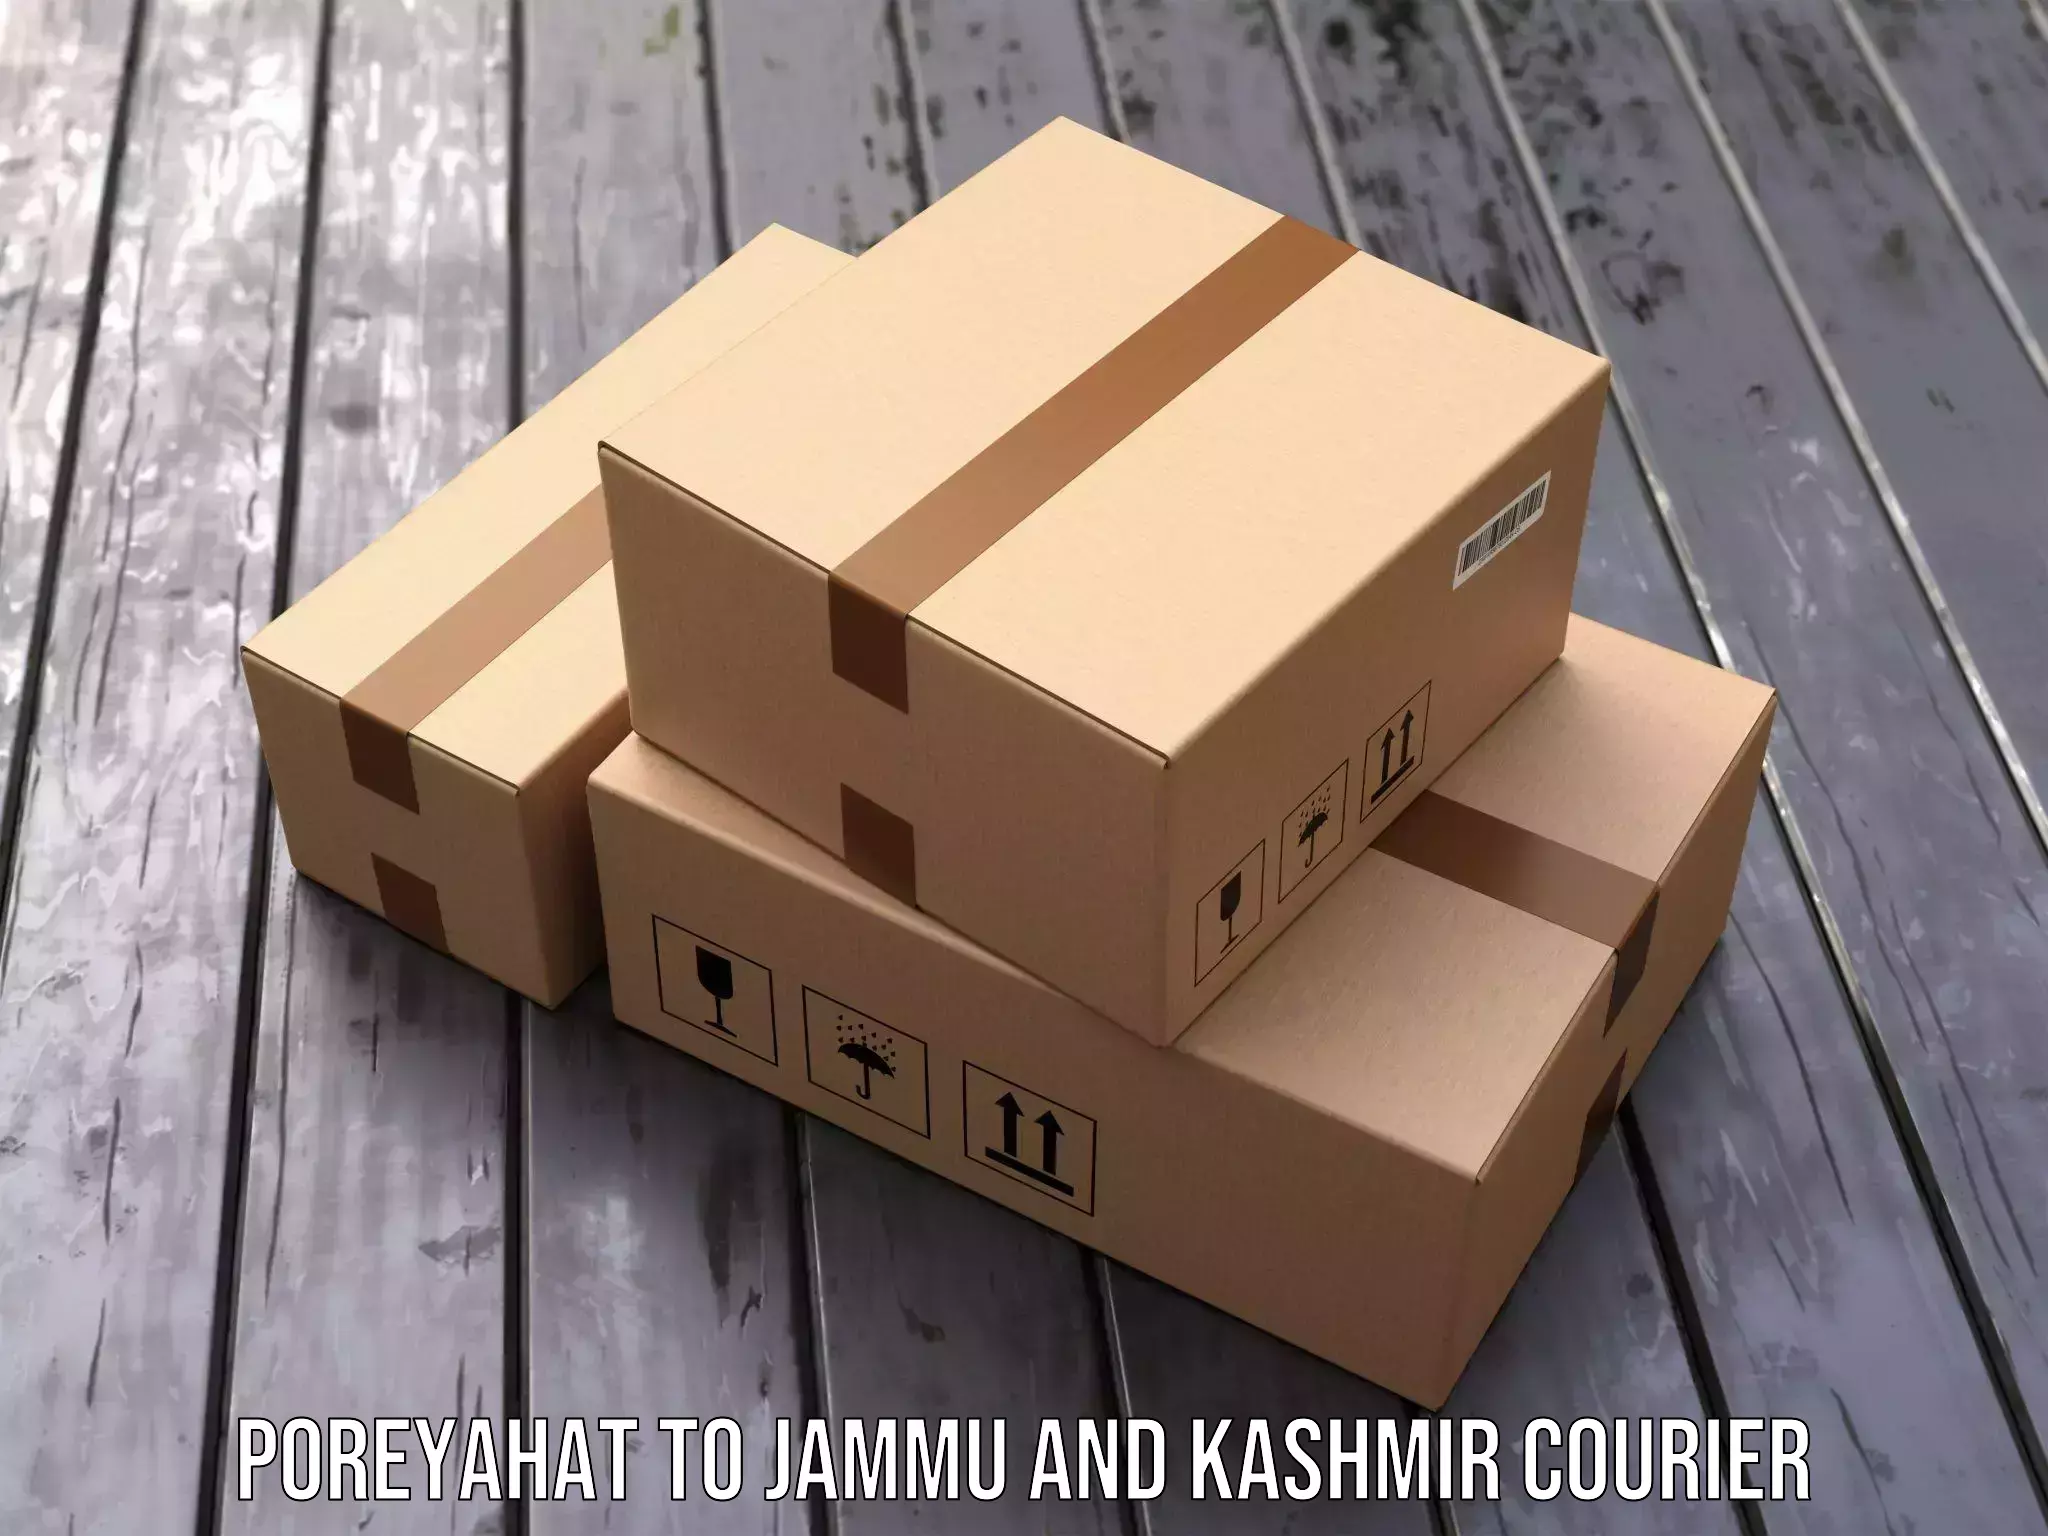 Ground shipping Poreyahat to Jammu and Kashmir